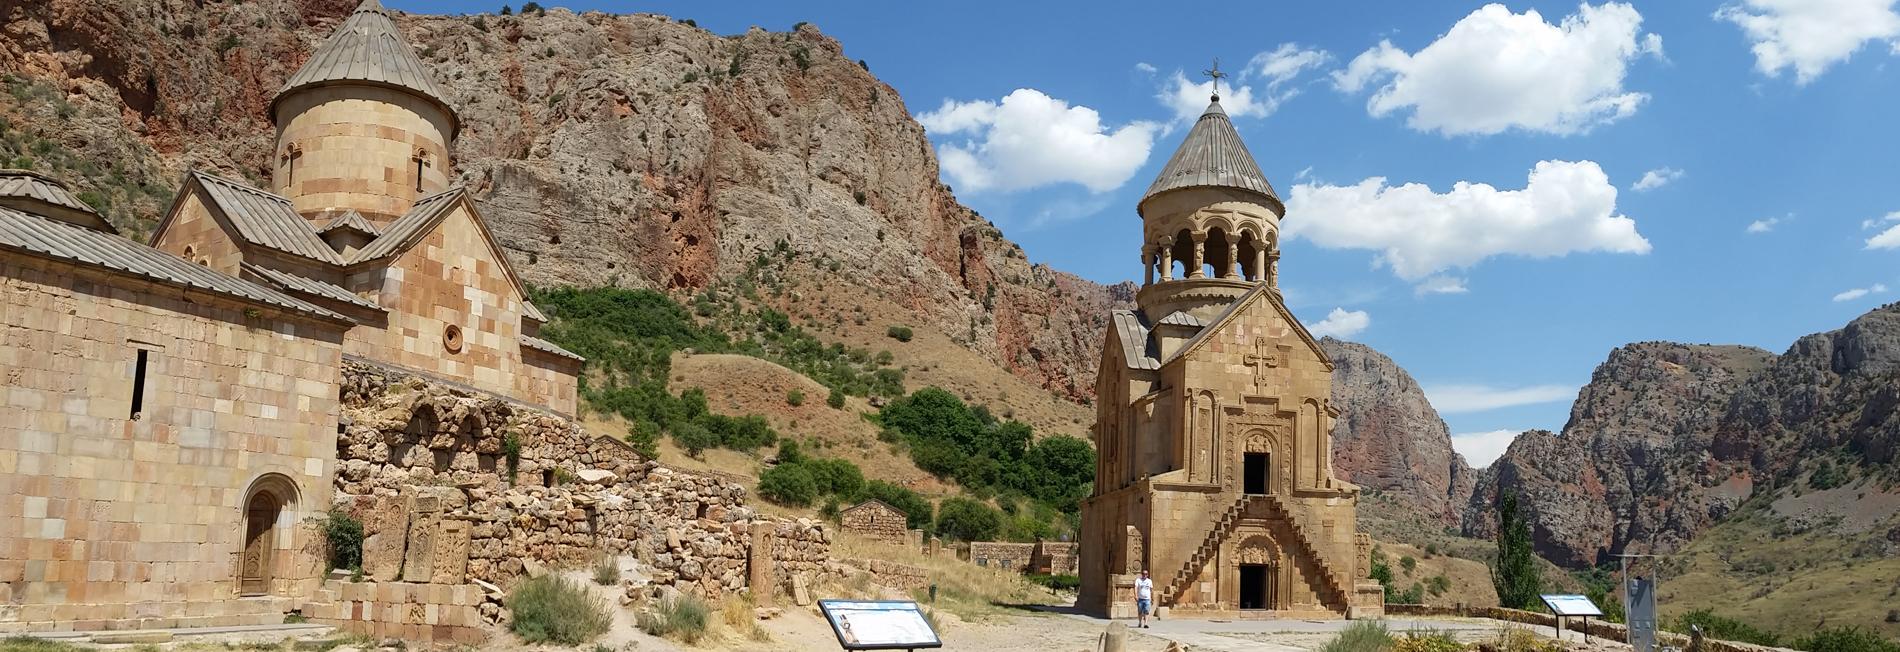 Eglises chrétiennes d'Arménie